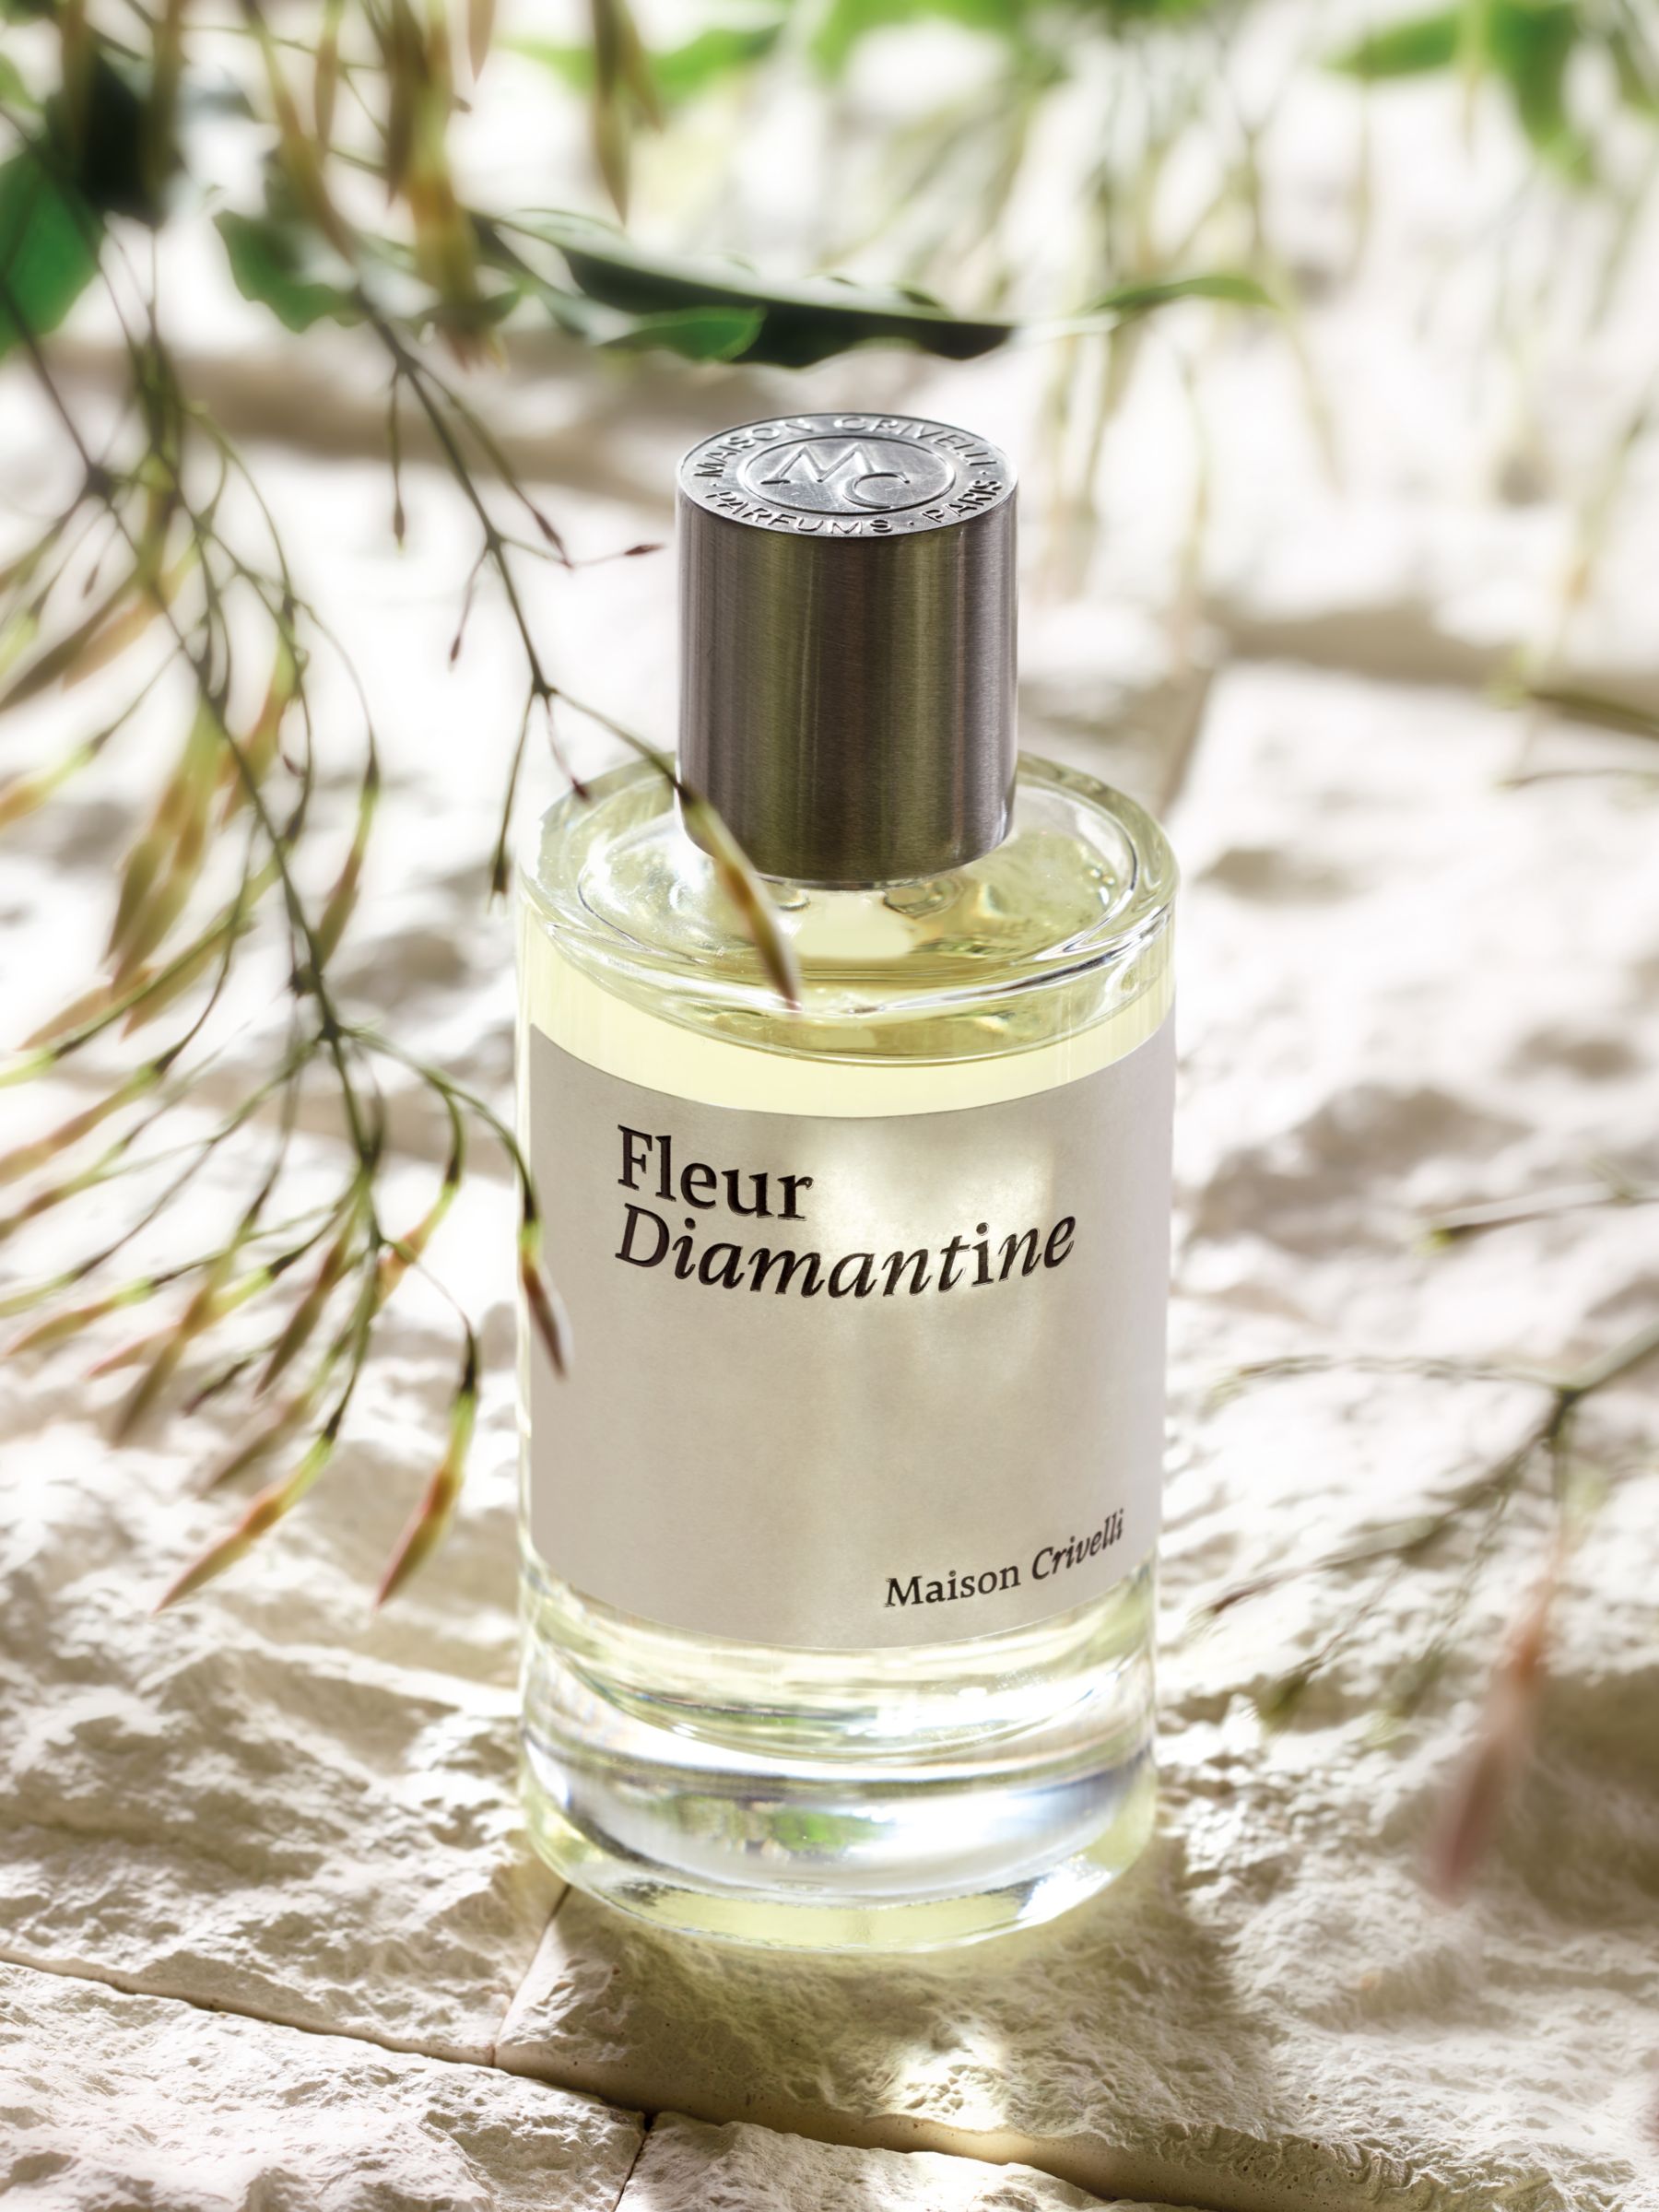 Maison Crivelli Fleur Diamantine Eau de Parfum, 100ml 3